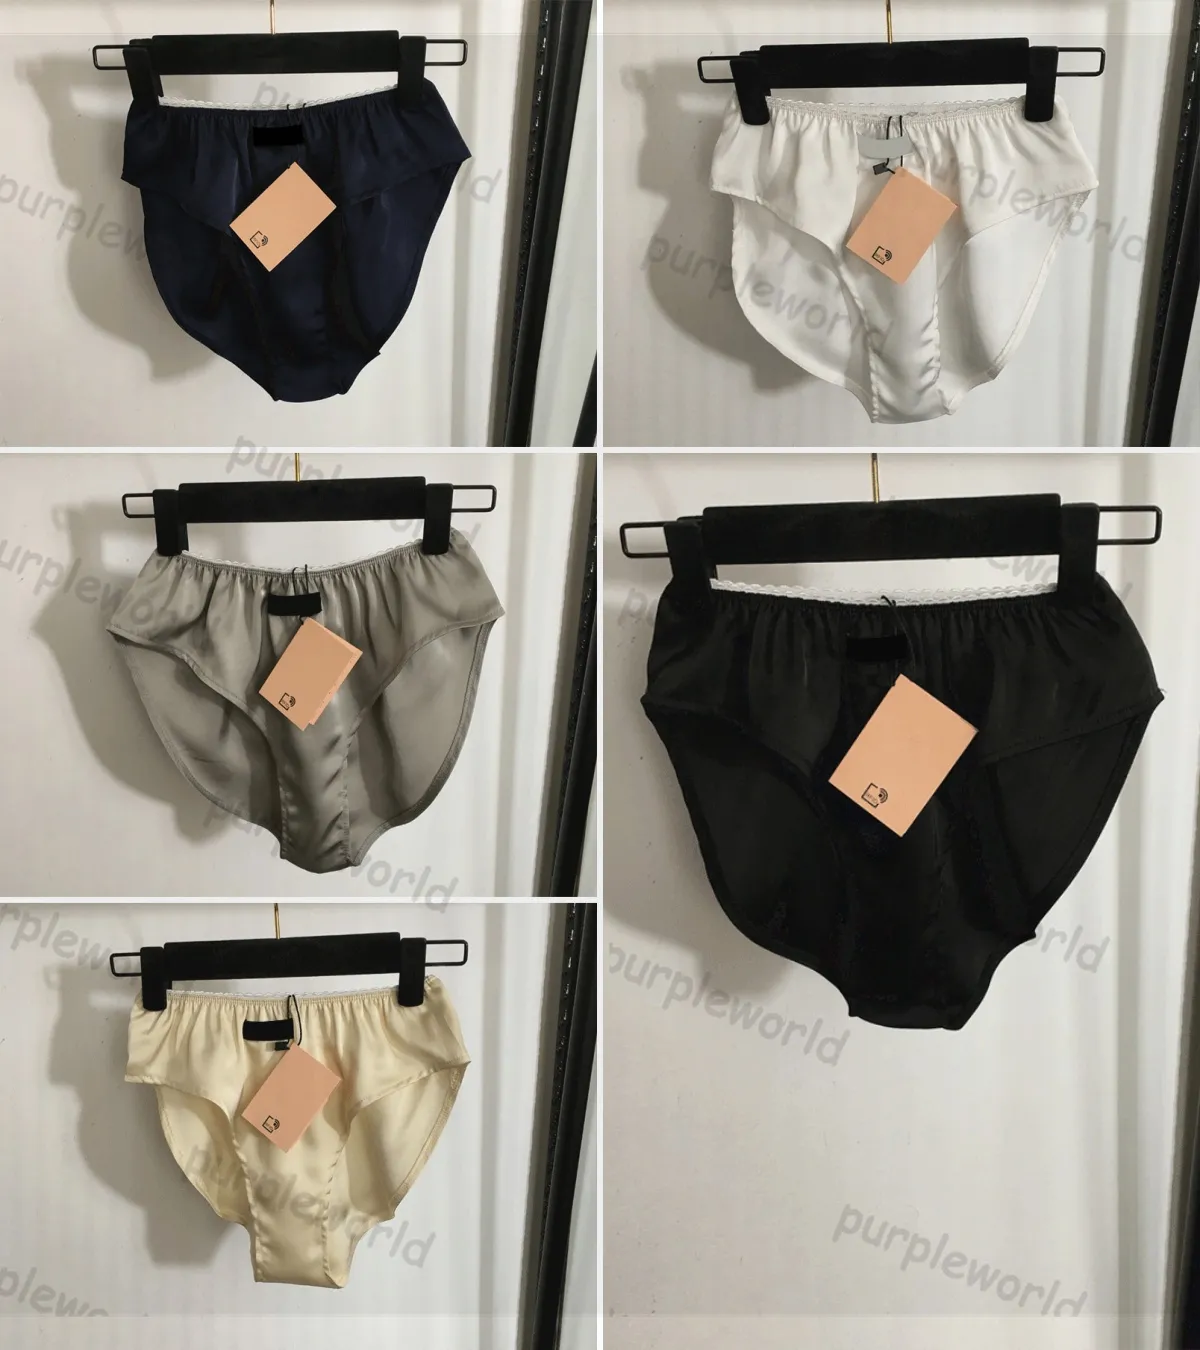 Designer Panties For Women Letter Elastic Underwear Summer Girls Lace Sexy Underwear